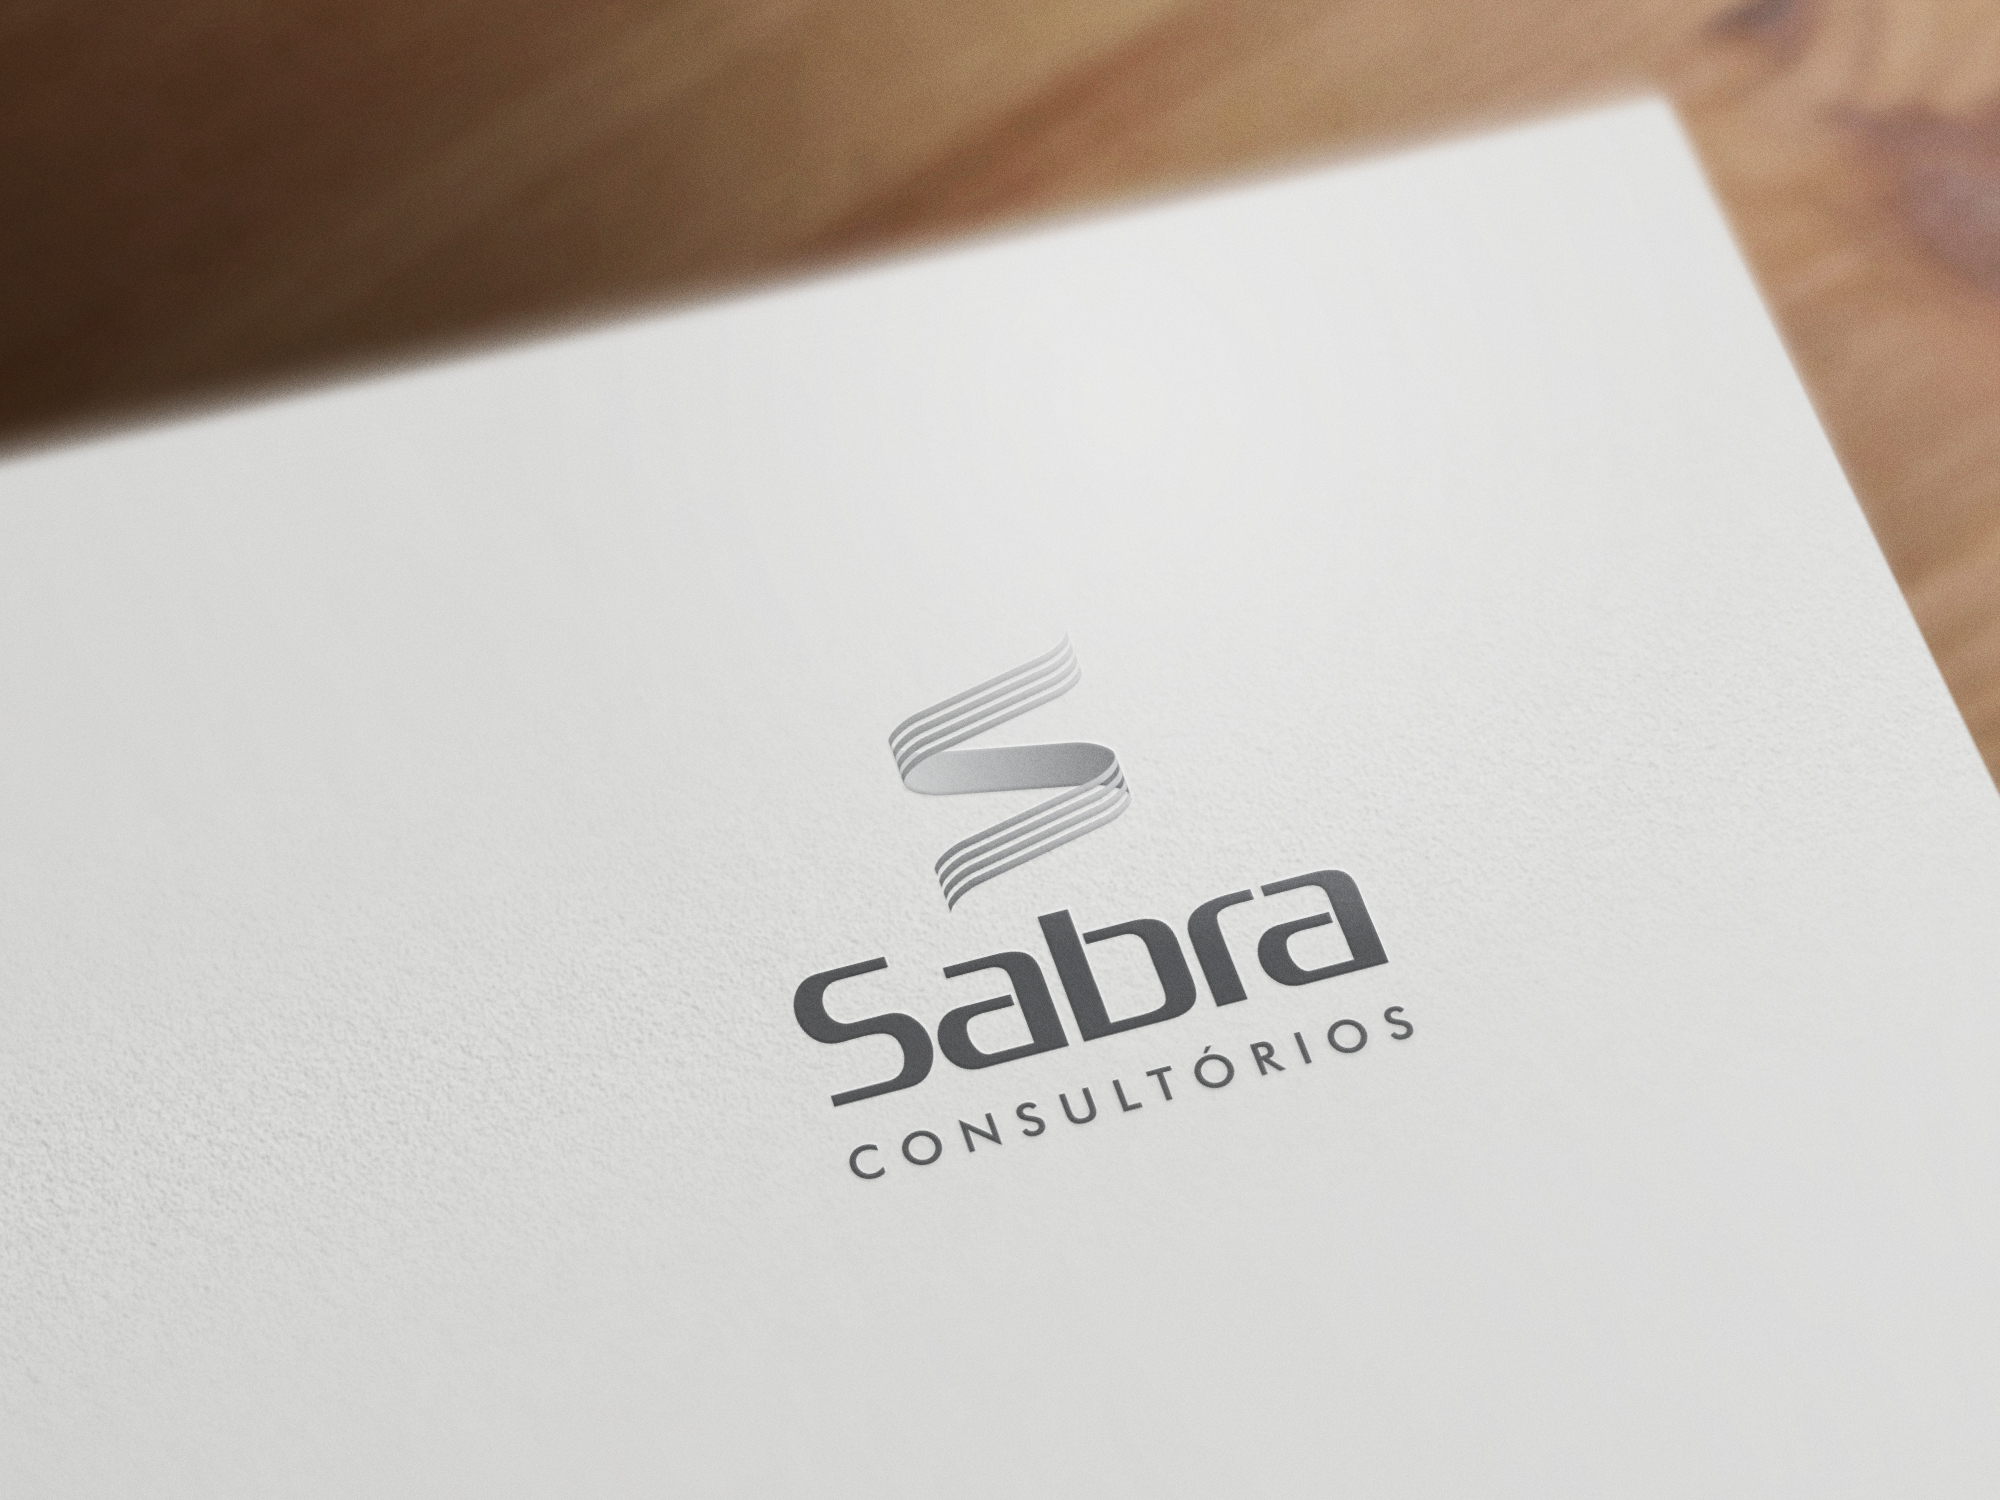 sidney_saito_sabra_consultorios_sao_paulo_logotipo_design_visual_idendity_logo